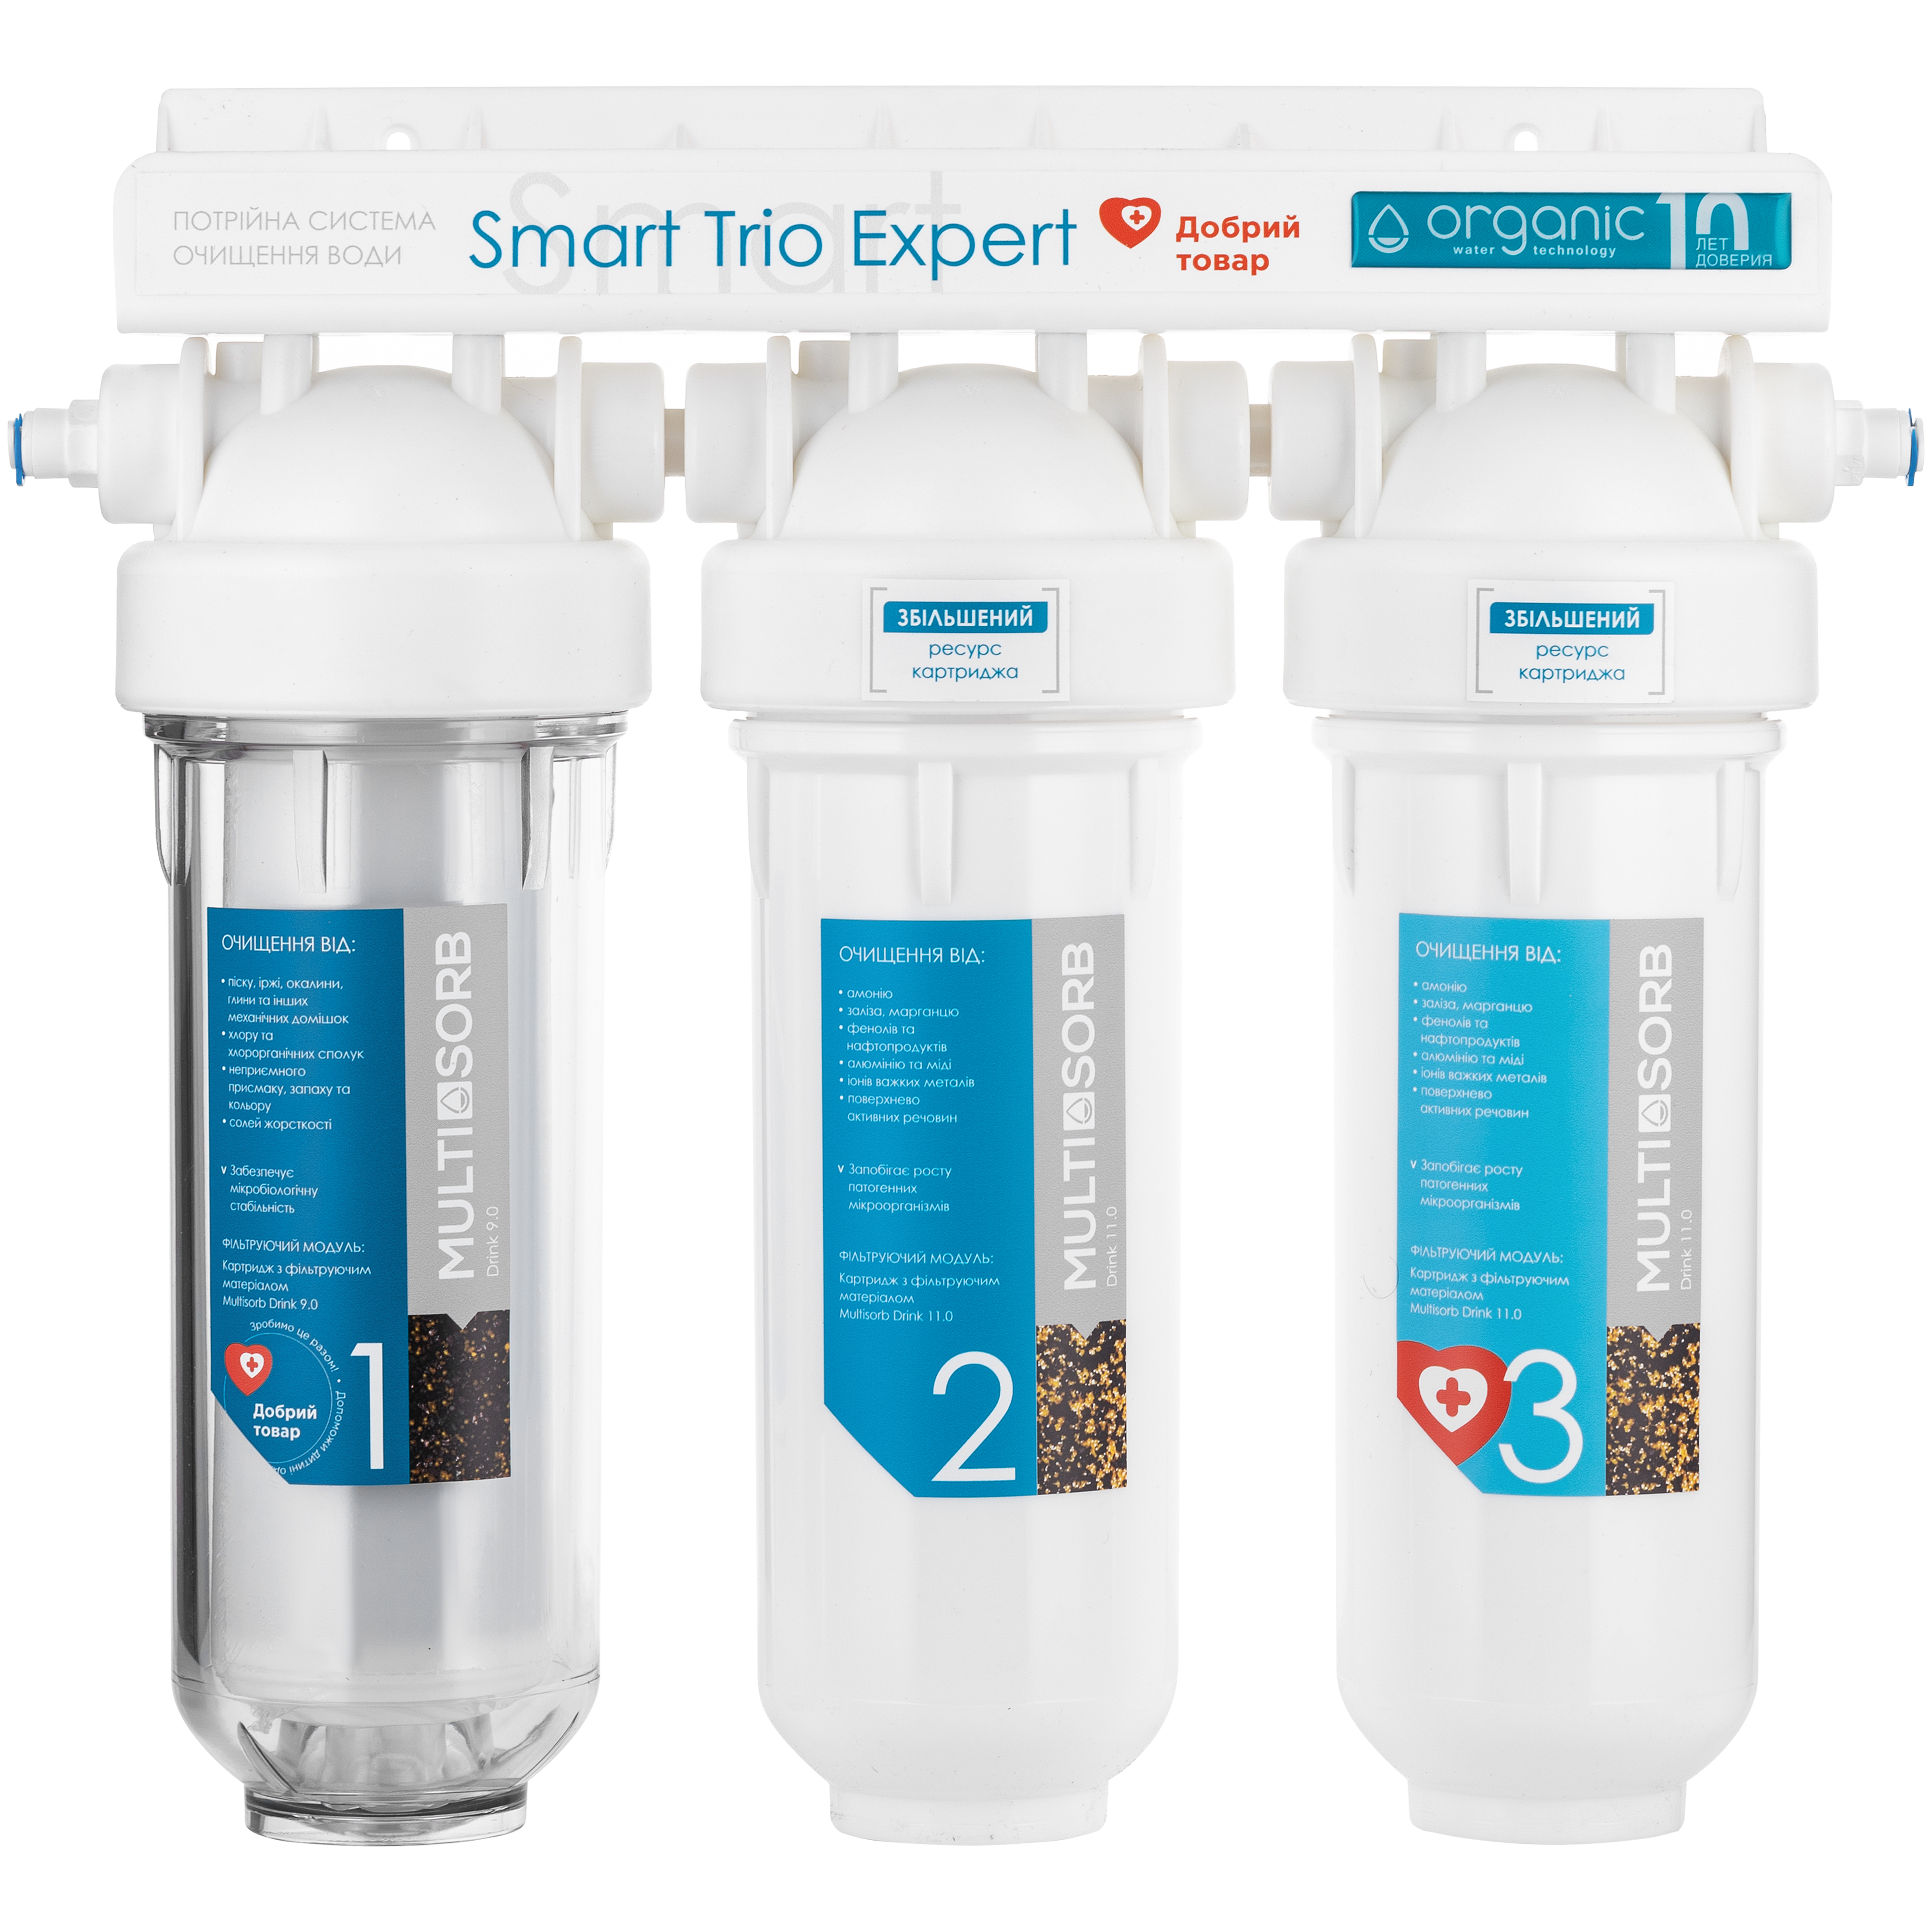 Фильтр для воды Organic Smart TRIO EXPERT в интернет-магазине, главное фото